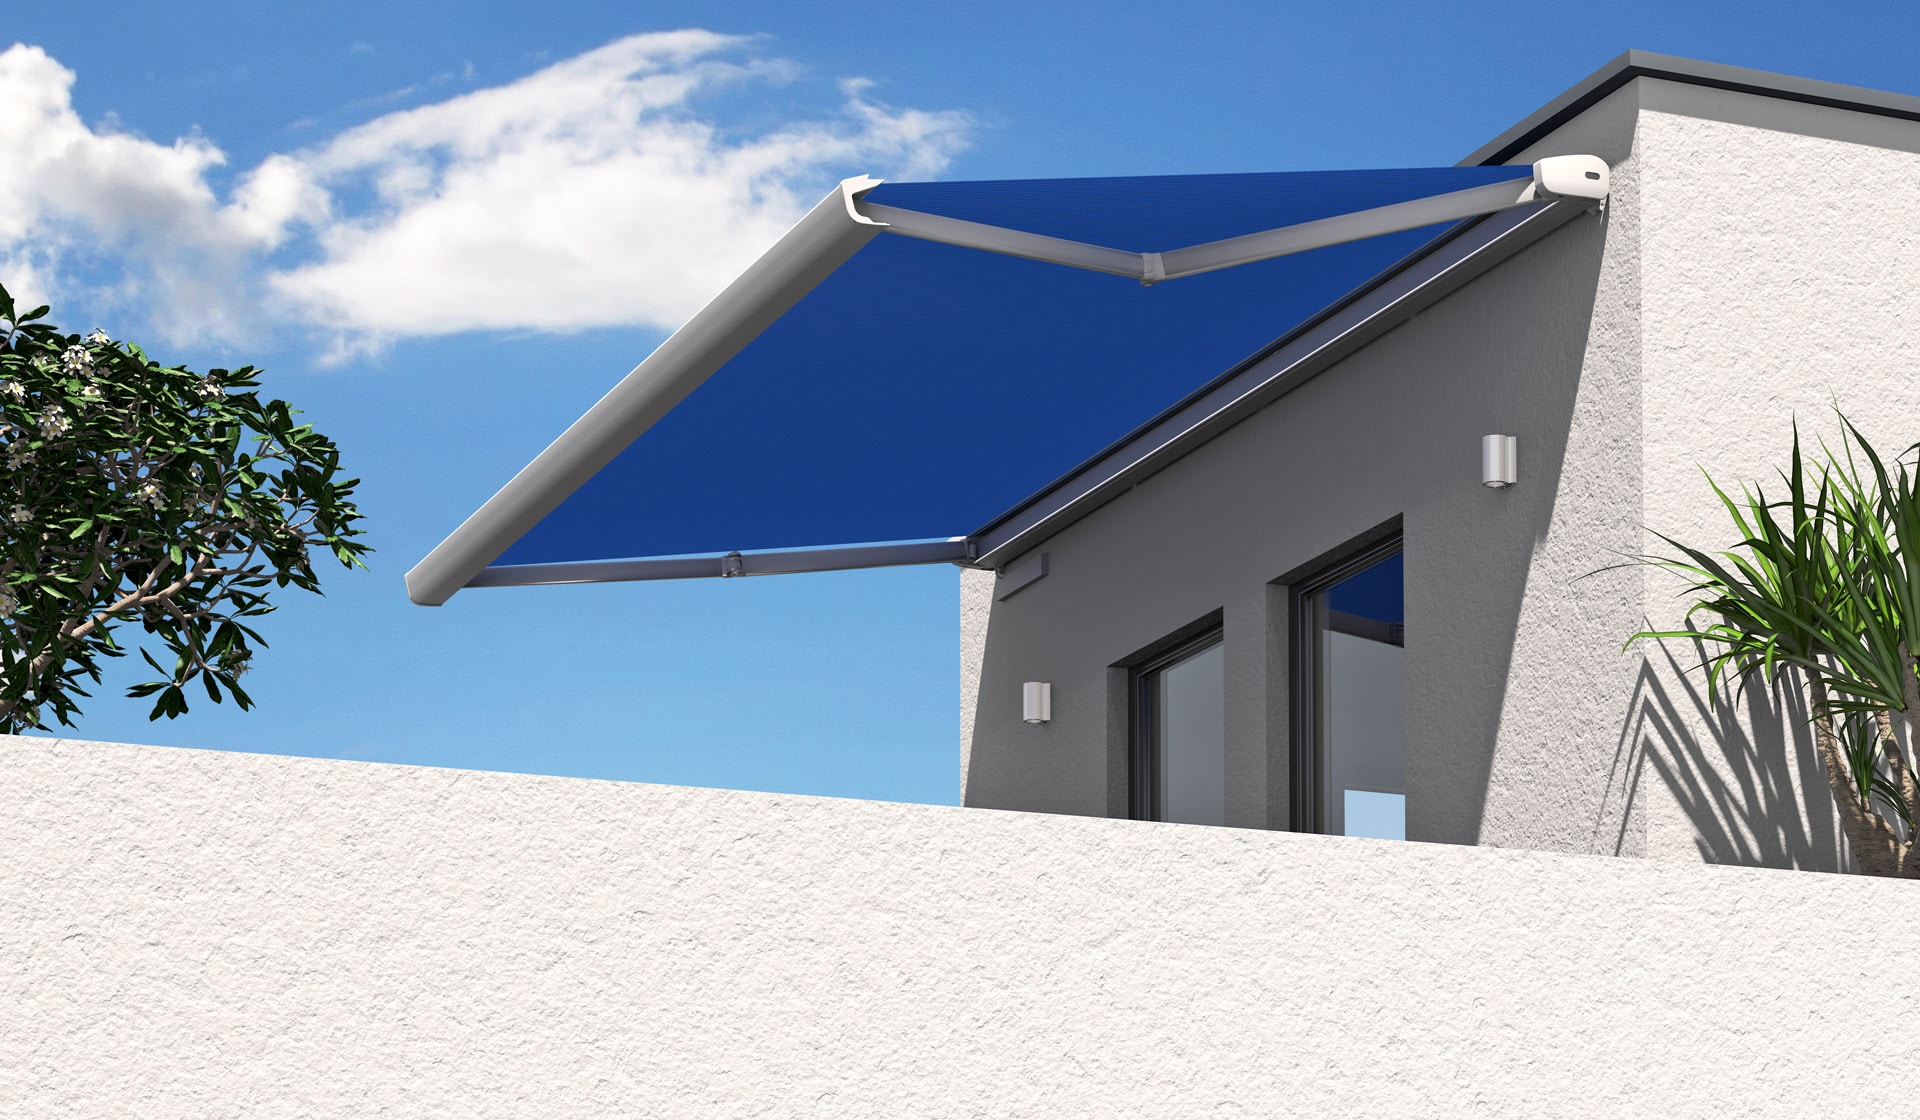 K 03 | Sonnenschutzmarkise weiß-blau offen auf Dachterrasse, Gelenkarm, elektrischer Motor | Svoboda